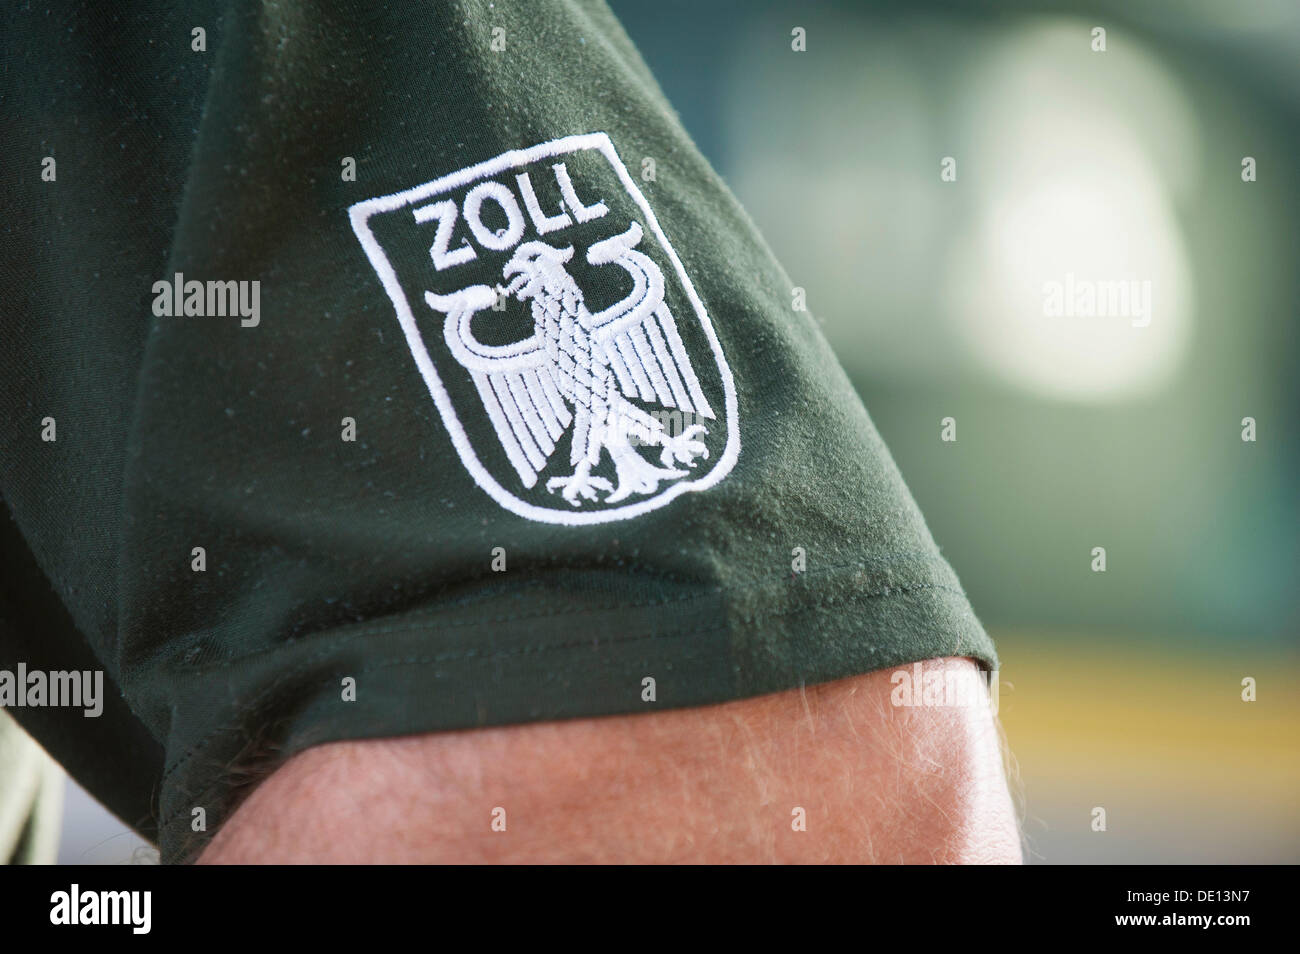 'Badge Zoll', l'allemand pour les 'Coutumes' sur l'uniforme d'un agent des douanes Banque D'Images